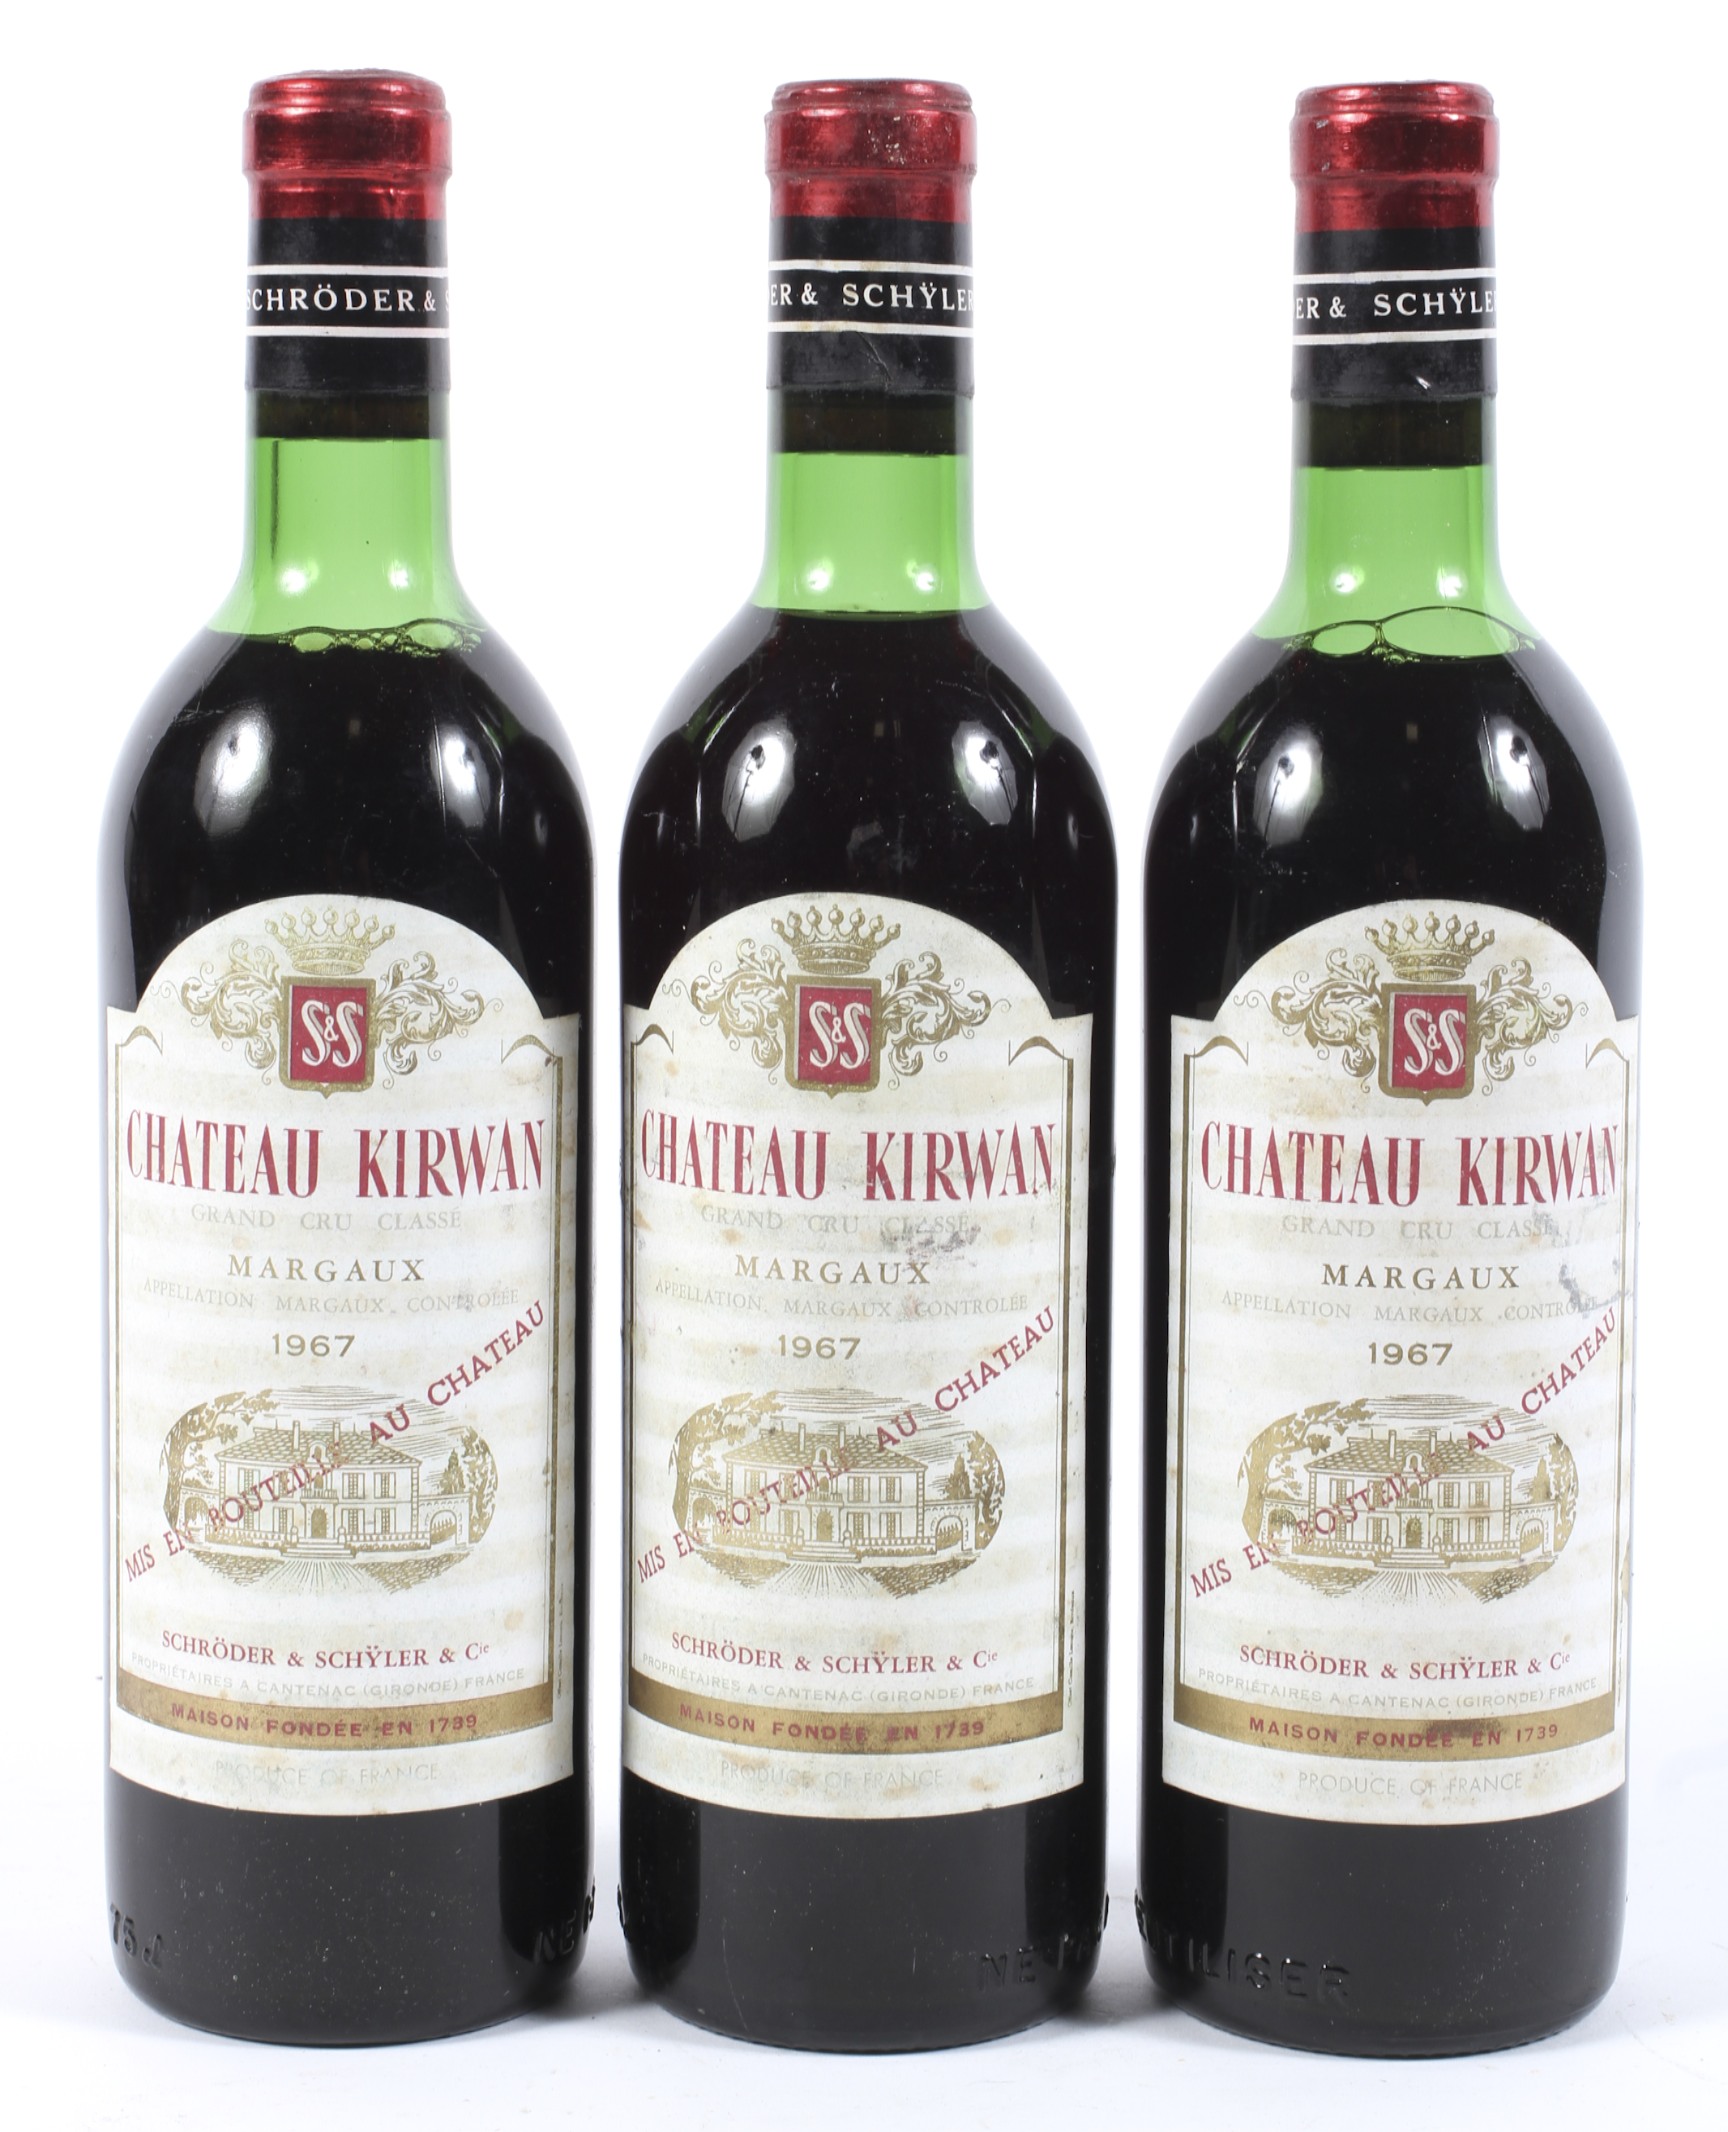 Three bottles of Chateau Kirwan Margaux 1967.